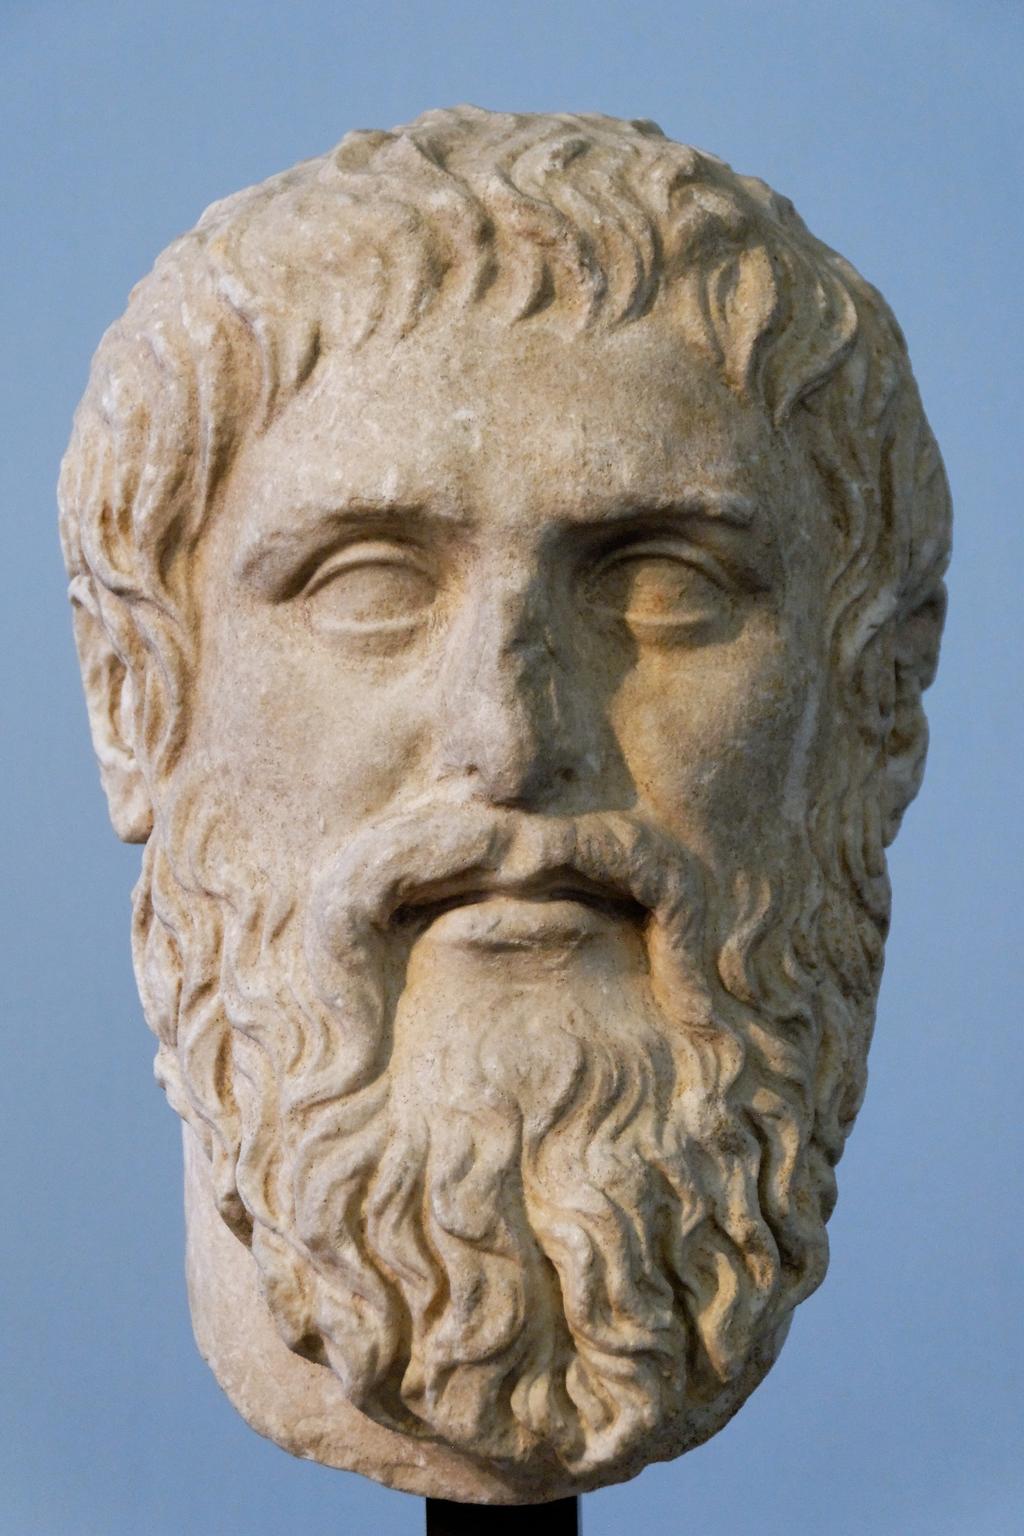 Plato leaves us